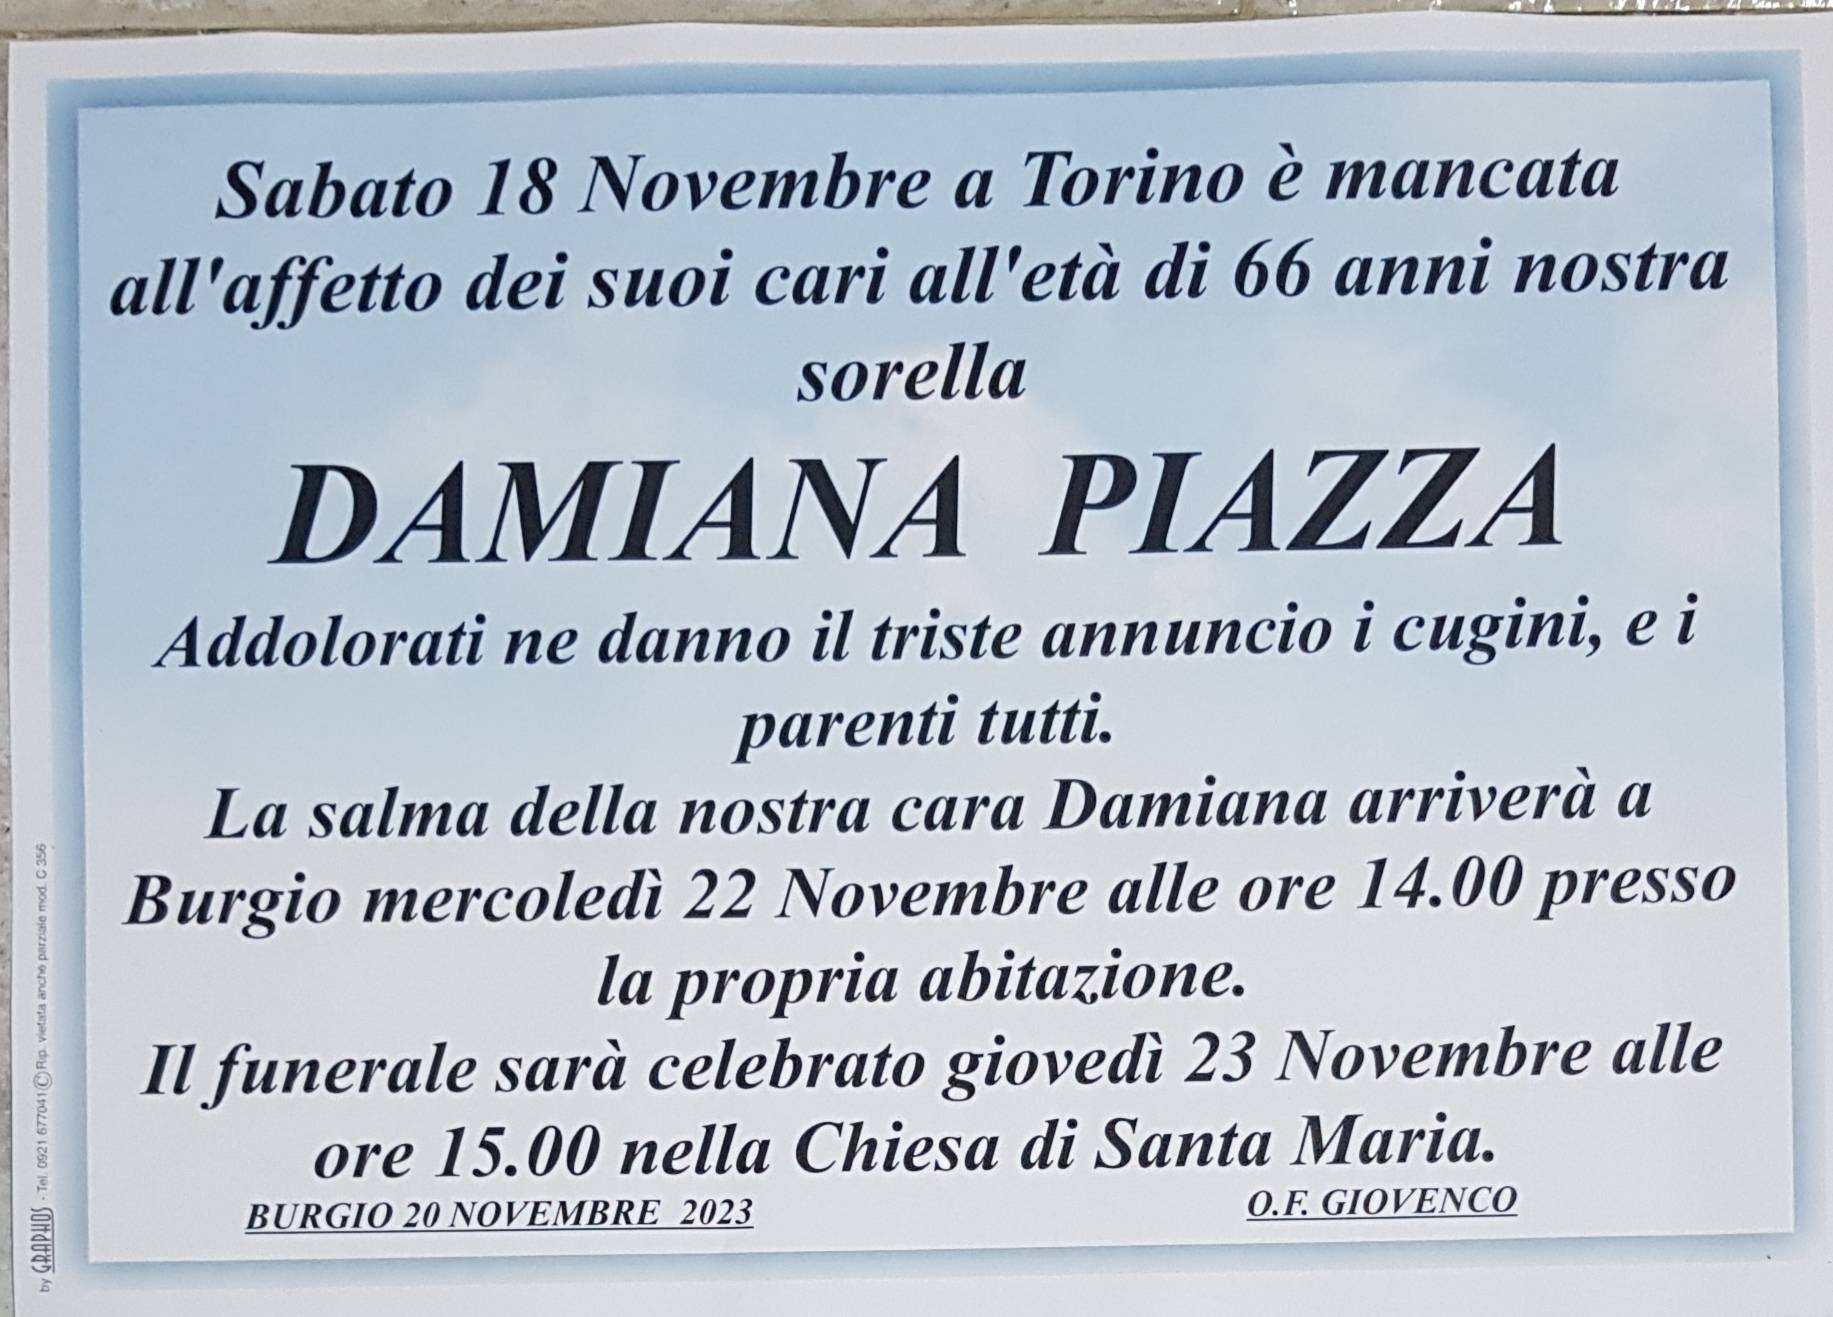 Damiana Piazza